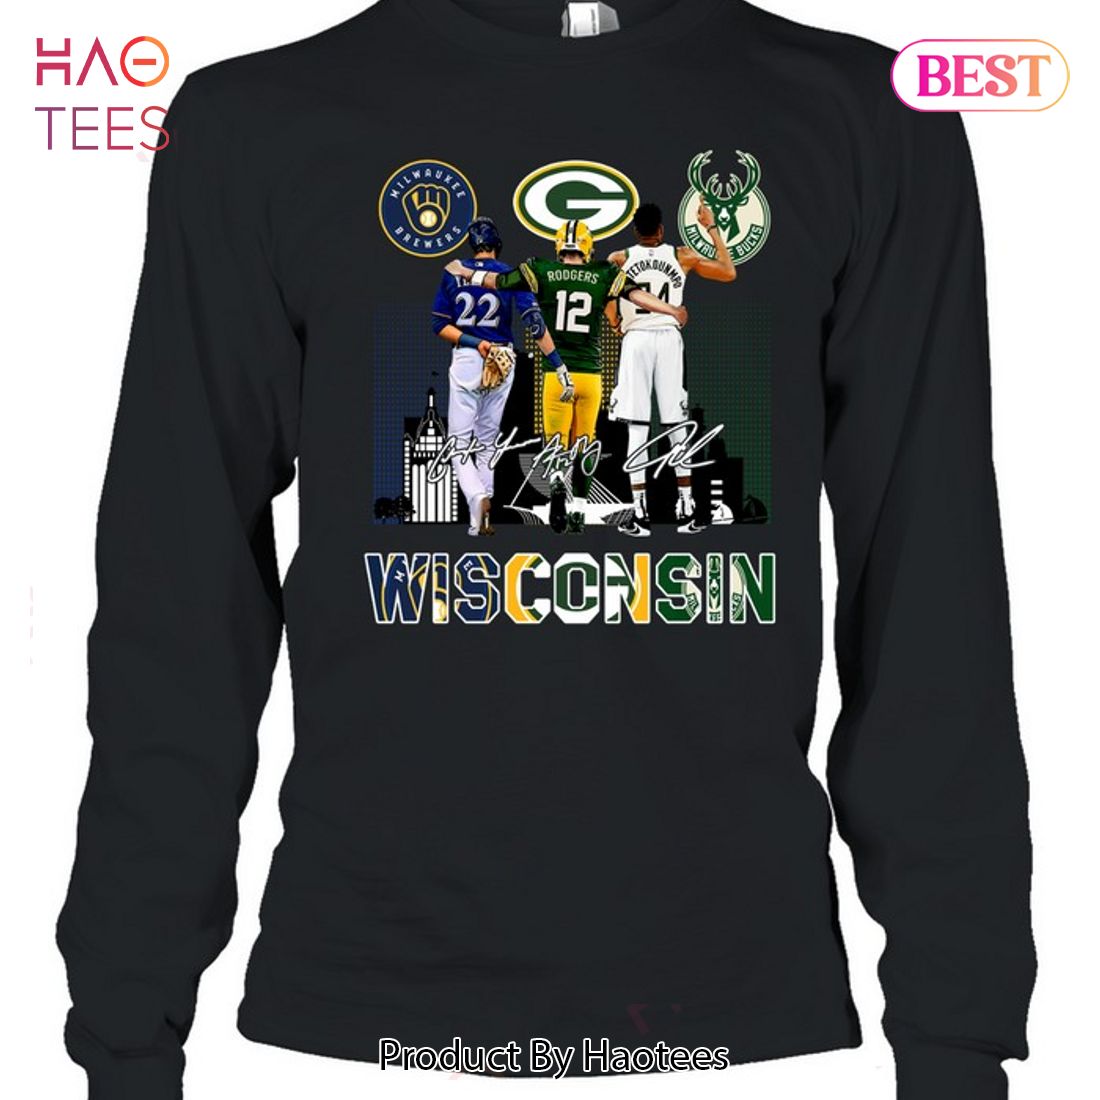 Wisconsin Packers Wisconsin Brewers Wisconsin Bucks T-shirt